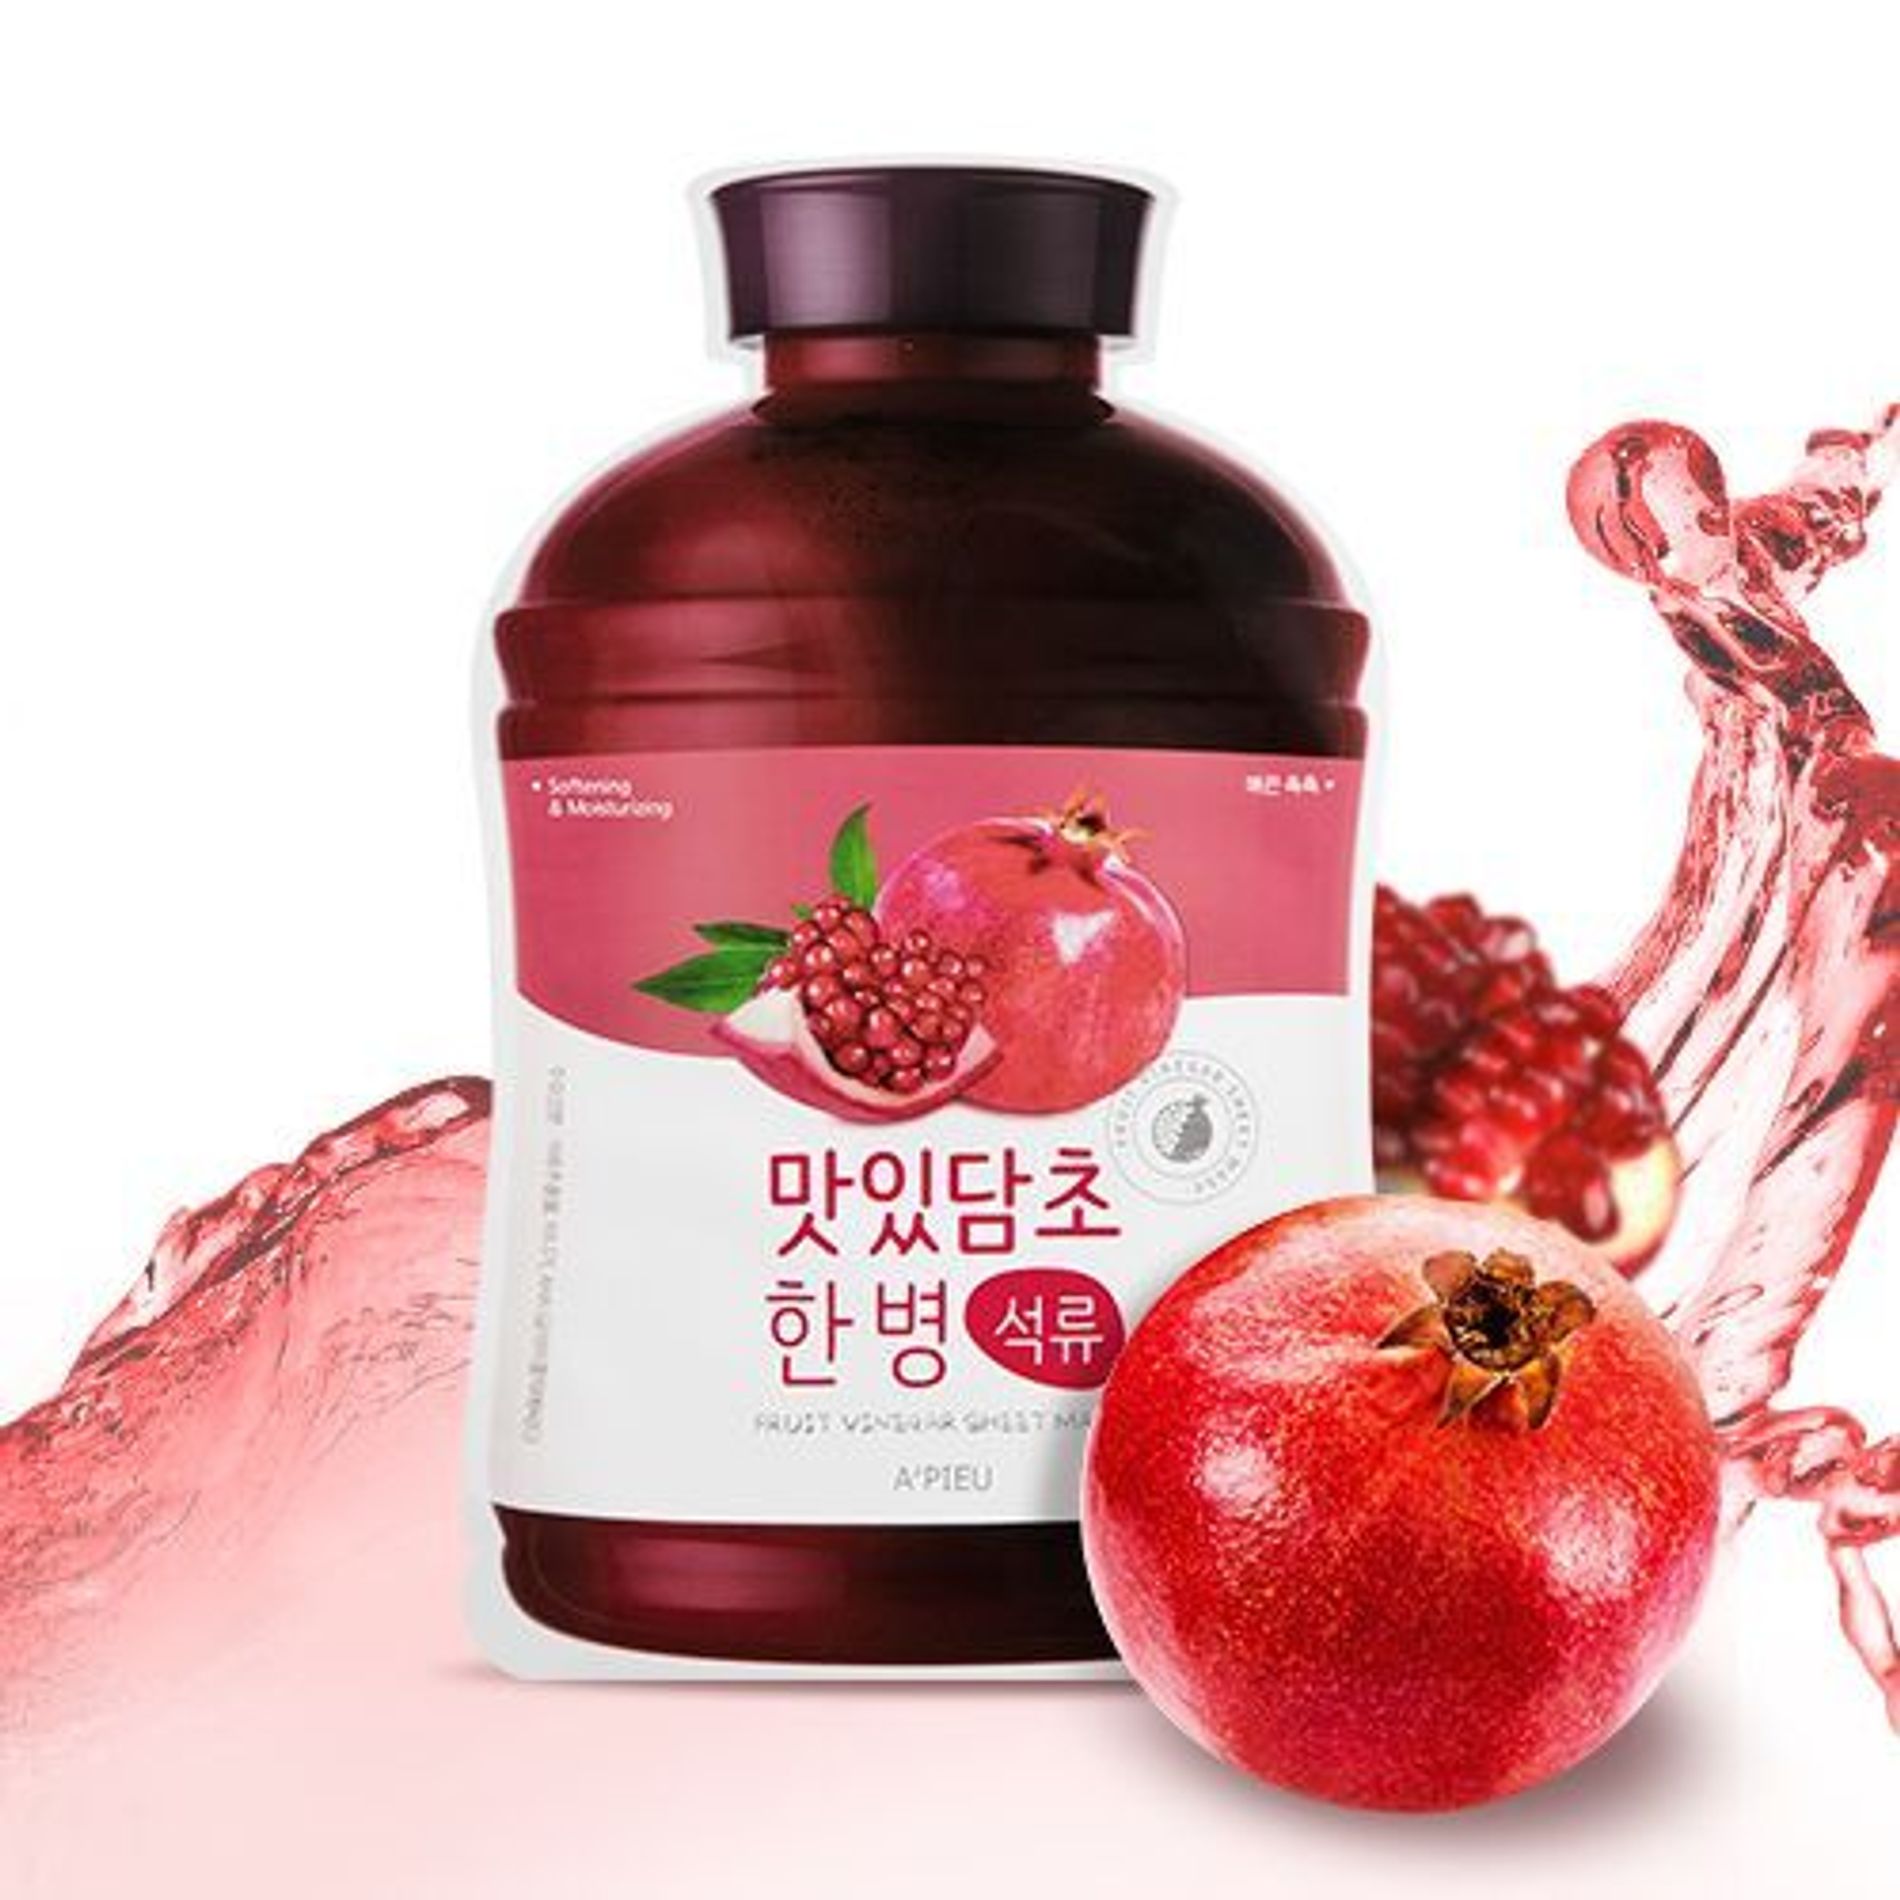 mat-na-a-pieu-fruit-vinegar-sheet-mask-pomegranate-2